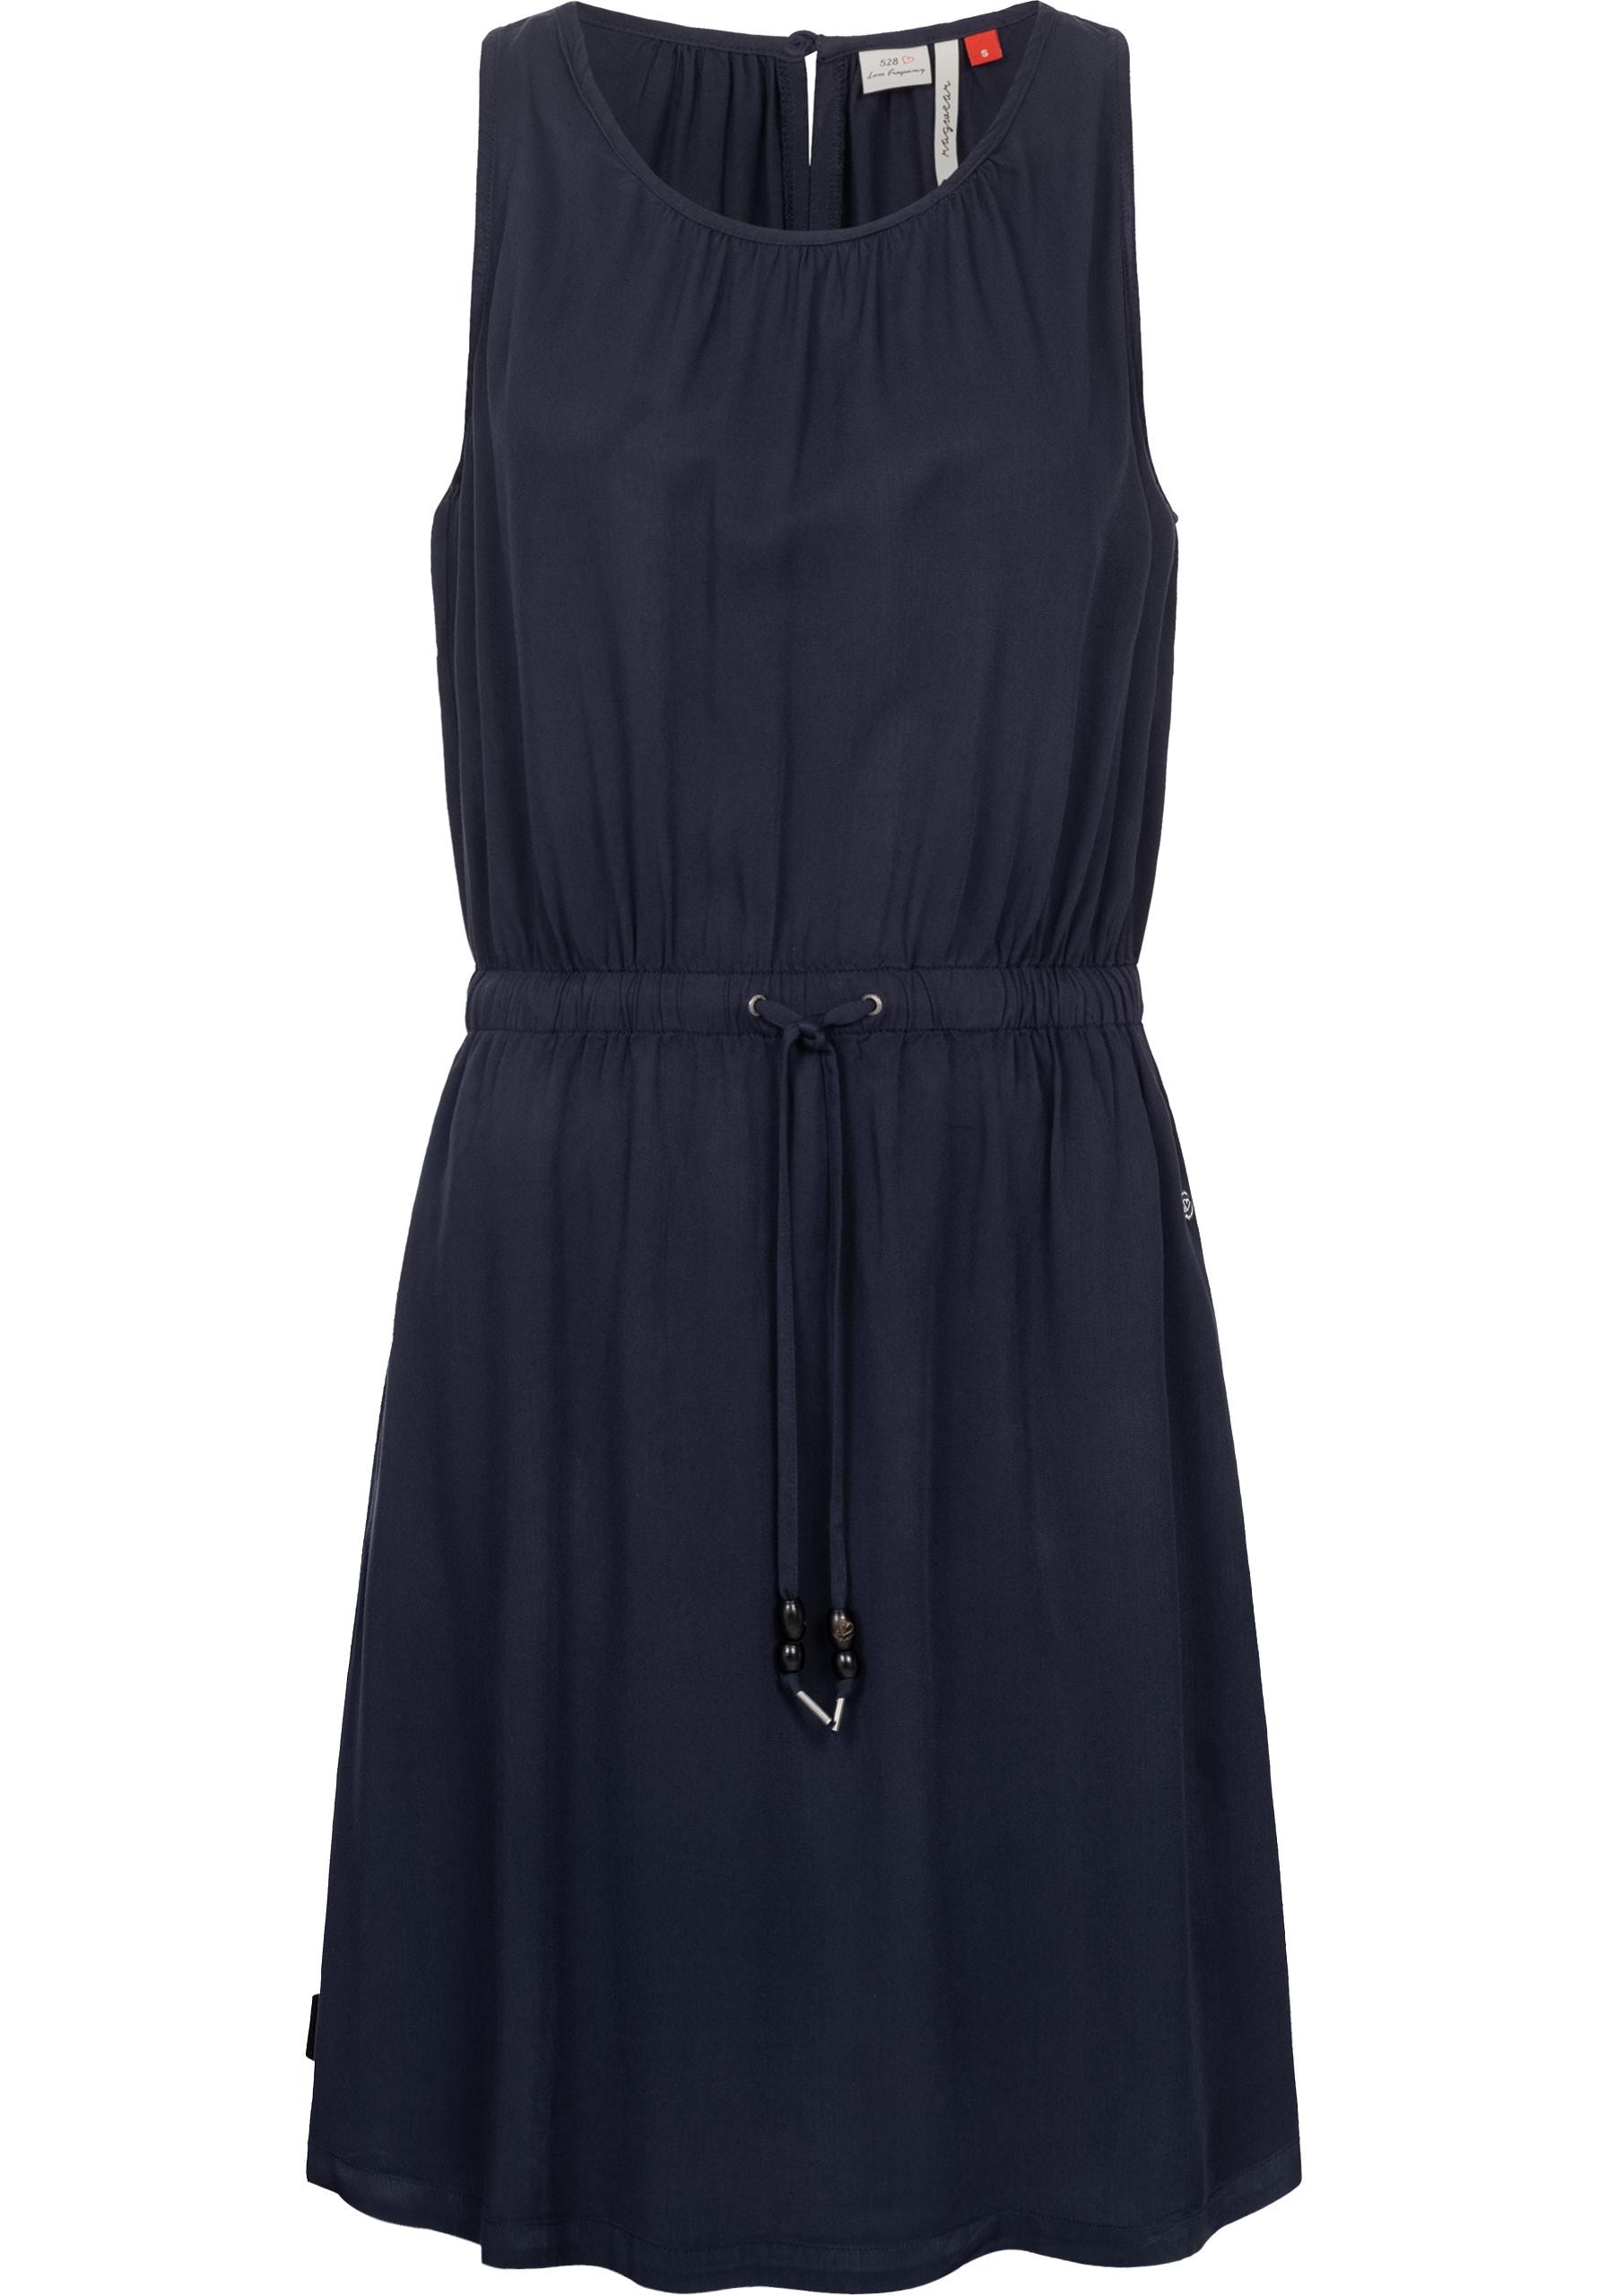 ragwear -  Blusenkleid "Sanai", stylisches Sommerkleid mit verspielten Details